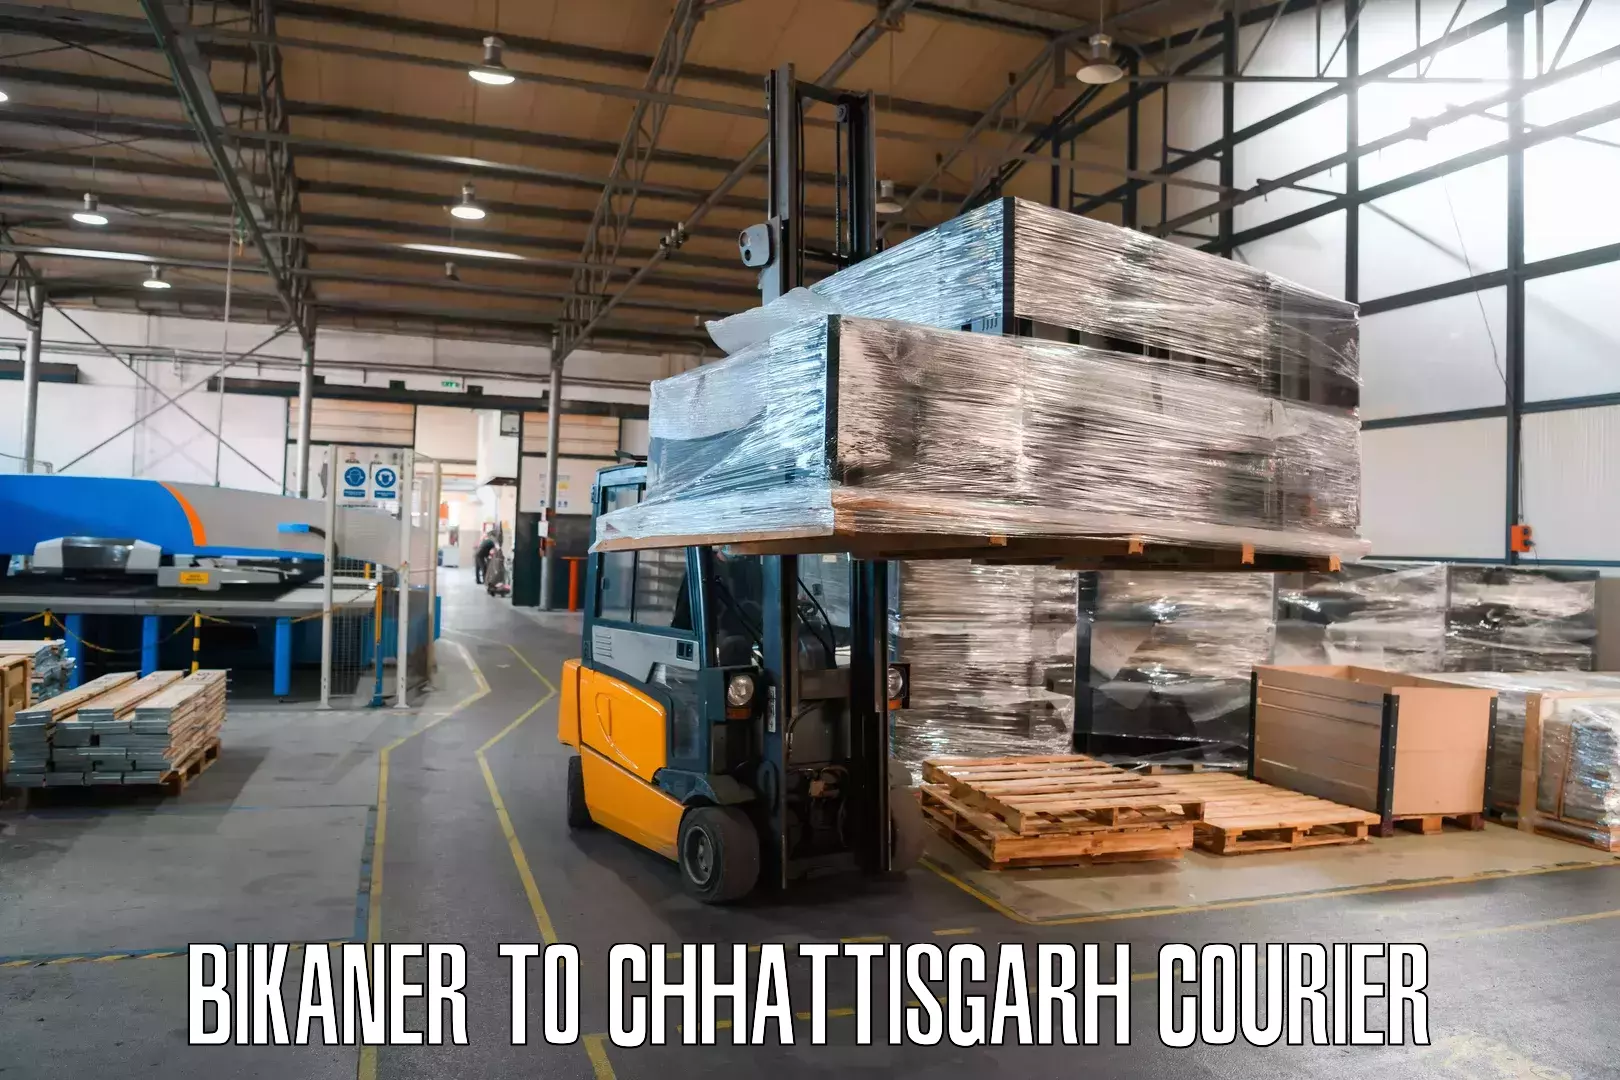 Digital courier platforms Bikaner to Pathalgaon